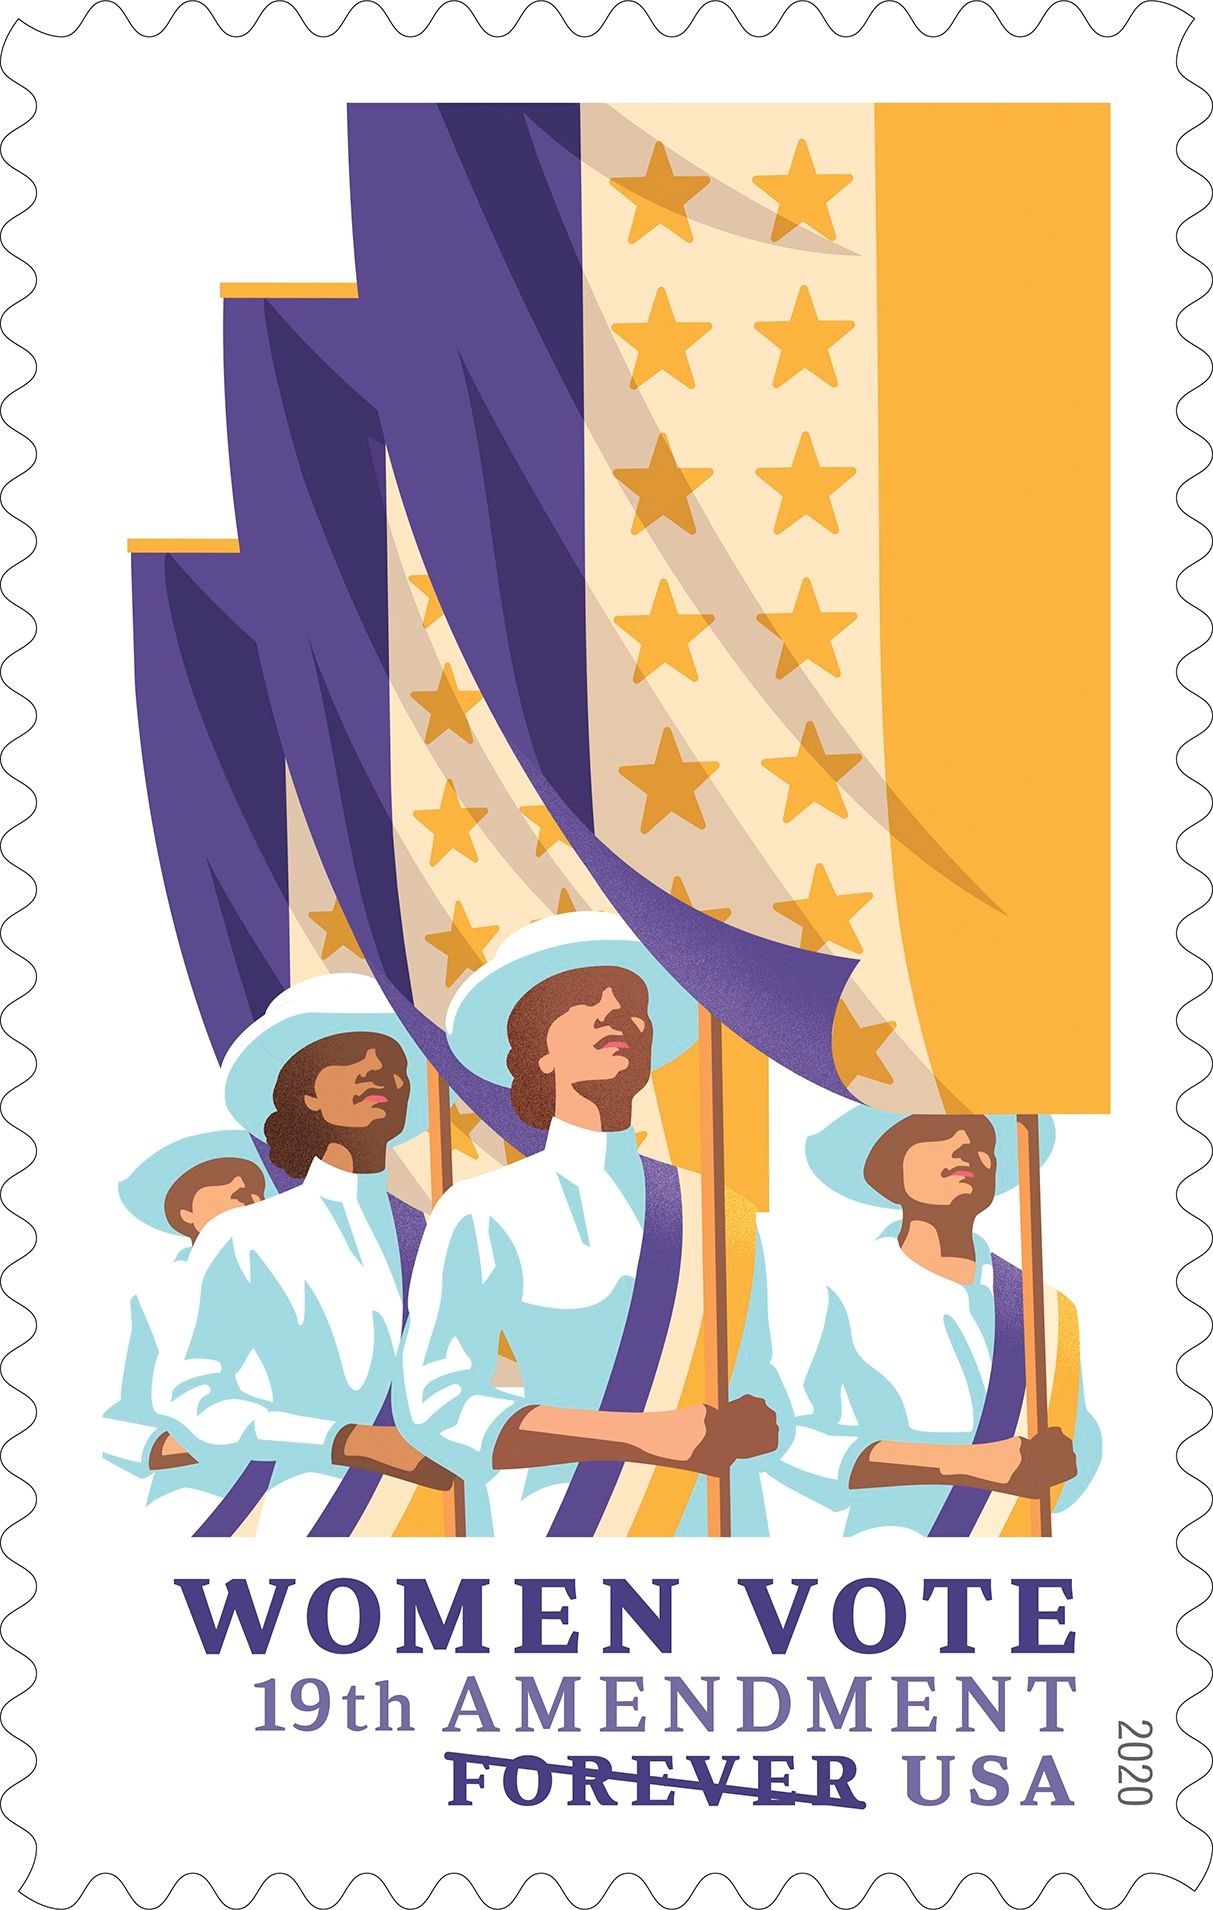 19th Amendment: Women Vote Stamp Commemorates Historic Suffrage Movement 